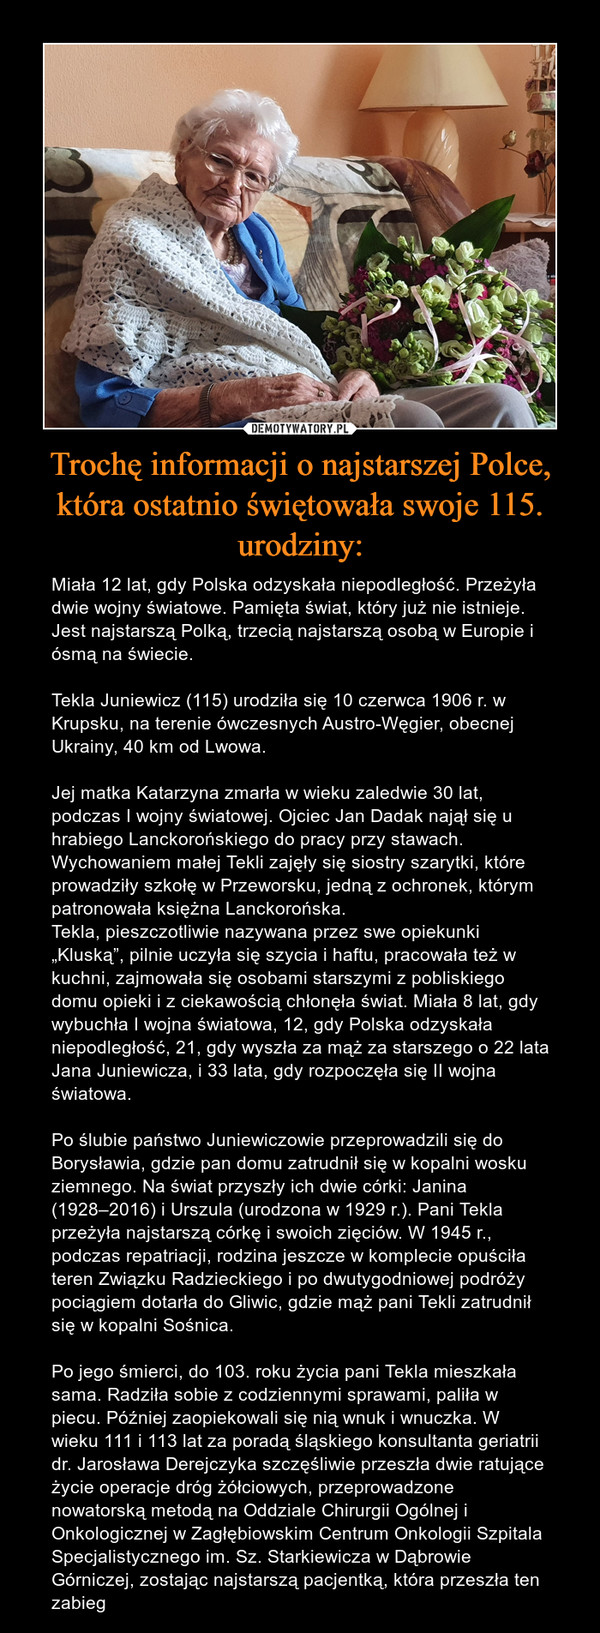 Trochę informacji o najstarszej Polce, która ostatnio świętowała swoje 115. urodziny: – Miała 12 lat, gdy Polska odzyskała niepodległość. Przeżyła dwie wojny światowe. Pamięta świat, który już nie istnieje. Jest najstarszą Polką, trzecią najstarszą osobą w Europie i ósmą na świecie.Tekla Juniewicz (115) urodziła się 10 czerwca 1906 r. w Krupsku, na terenie ówczesnych Austro-Węgier, obecnej Ukrainy, 40 km od Lwowa.Jej matka Katarzyna zmarła w wieku zaledwie 30 lat, podczas I wojny światowej. Ojciec Jan Dadak najął się u hrabiego Lanckorońskiego do pracy przy stawach. Wychowaniem małej Tekli zajęły się siostry szarytki, które prowadziły szkołę w Przeworsku, jedną z ochronek, którym patronowała księżna Lanckorońska.Tekla, pieszczotliwie nazywana przez swe opiekunki „Kluską”, pilnie uczyła się szycia i haftu, pracowała też w kuchni, zajmowała się osobami starszymi z pobliskiego domu opieki i z ciekawością chłonęła świat. Miała 8 lat, gdy wybuchła I wojna światowa, 12, gdy Polska odzyskała niepodległość, 21, gdy wyszła za mąż za starszego o 22 lata Jana Juniewicza, i 33 lata, gdy rozpoczęła się II wojna światowa.Po ślubie państwo Juniewiczowie przeprowadzili się do Borysławia, gdzie pan domu zatrudnił się w kopalni wosku ziemnego. Na świat przyszły ich dwie córki: Janina (1928–2016) i Urszula (urodzona w 1929 r.). Pani Tekla przeżyła najstarszą córkę i swoich zięciów. W 1945 r., podczas repatriacji, rodzina jeszcze w komplecie opuściła teren Związku Radzieckiego i po dwutygodniowej podróży pociągiem dotarła do Gliwic, gdzie mąż pani Tekli zatrudnił się w kopalni Sośnica.Po jego śmierci, do 103. roku życia pani Tekla mieszkała sama. Radziła sobie z codziennymi sprawami, paliła w piecu. Później zaopiekowali się nią wnuk i wnuczka. W wieku 111 i 113 lat za poradą śląskiego konsultanta geriatrii dr. Jarosława Derejczyka szczęśliwie przeszła dwie ratujące życie operacje dróg żółciowych, przeprowadzone nowatorską metodą na Oddziale Chirurgii Ogólnej i Onkologicznej w Zagłębiowskim Centrum Onkologii Szpitala Specjalistycznego im. Sz. Starkiewicza w Dąbrowie Górniczej, zostając najstarszą pacjentką, która przeszła ten zabieg 